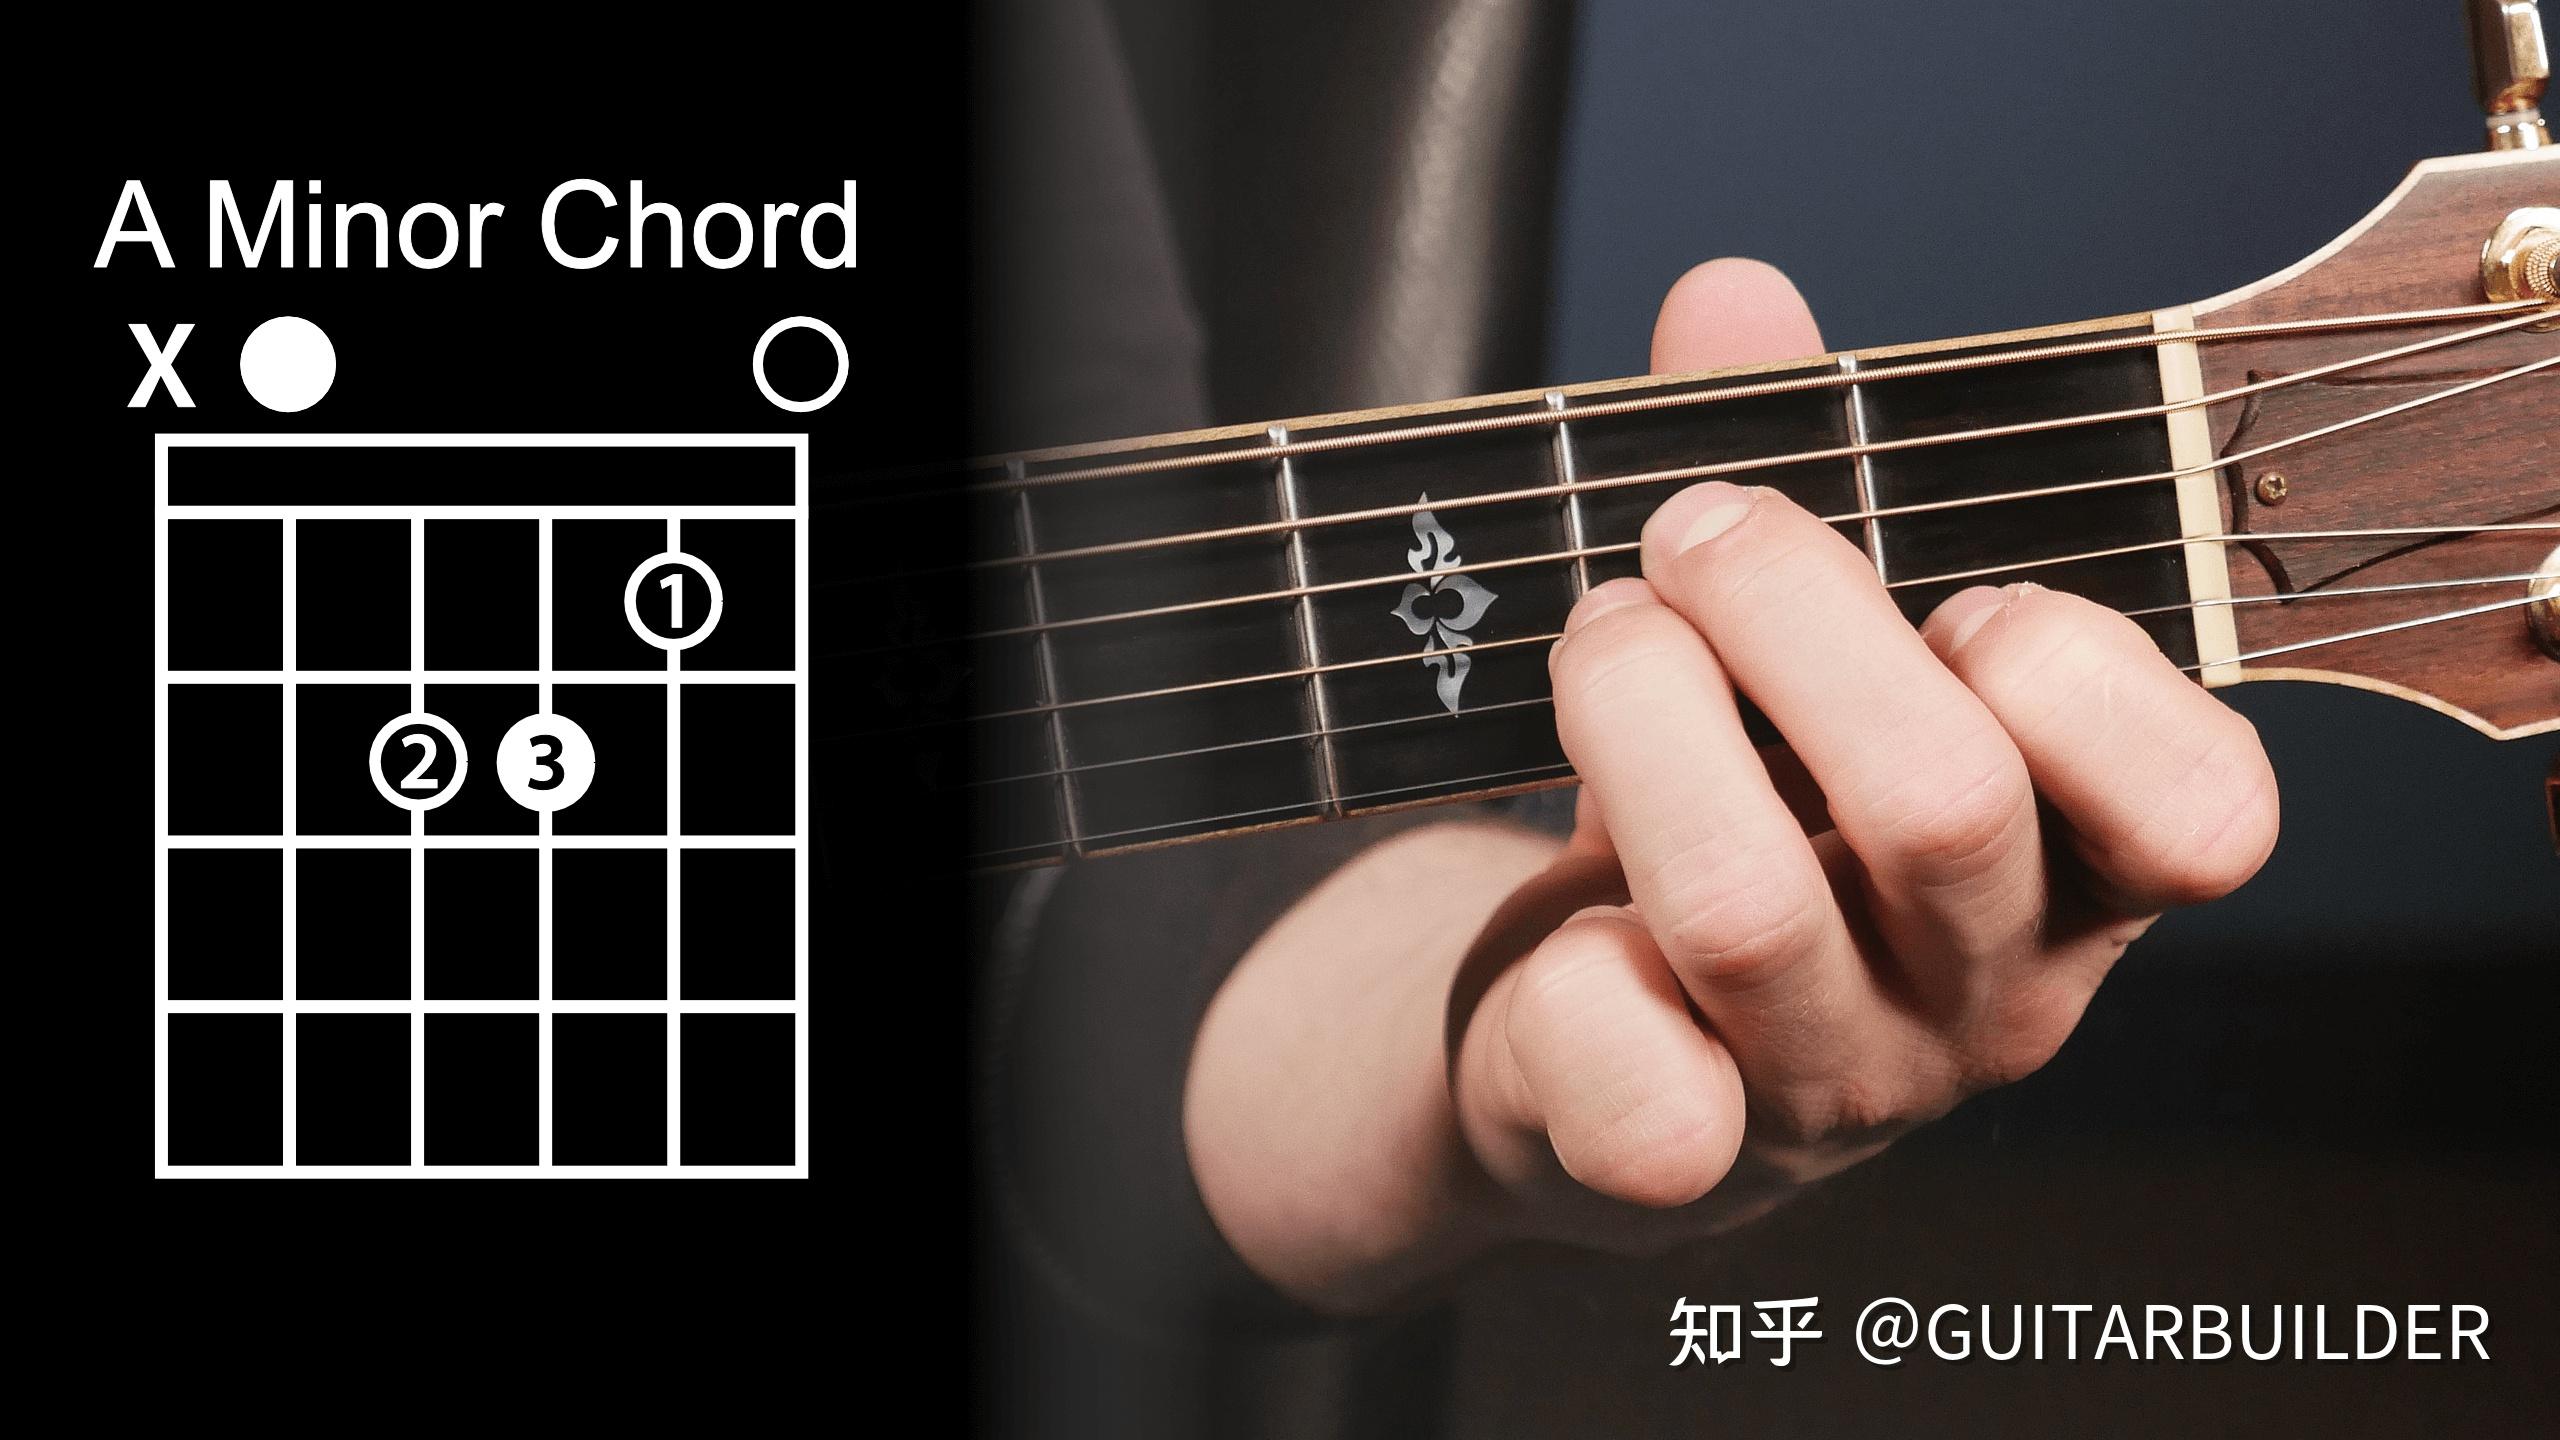 吉他基础知识_吉他各调音阶及常用和弦图-吉他入门 - 乐器学习网